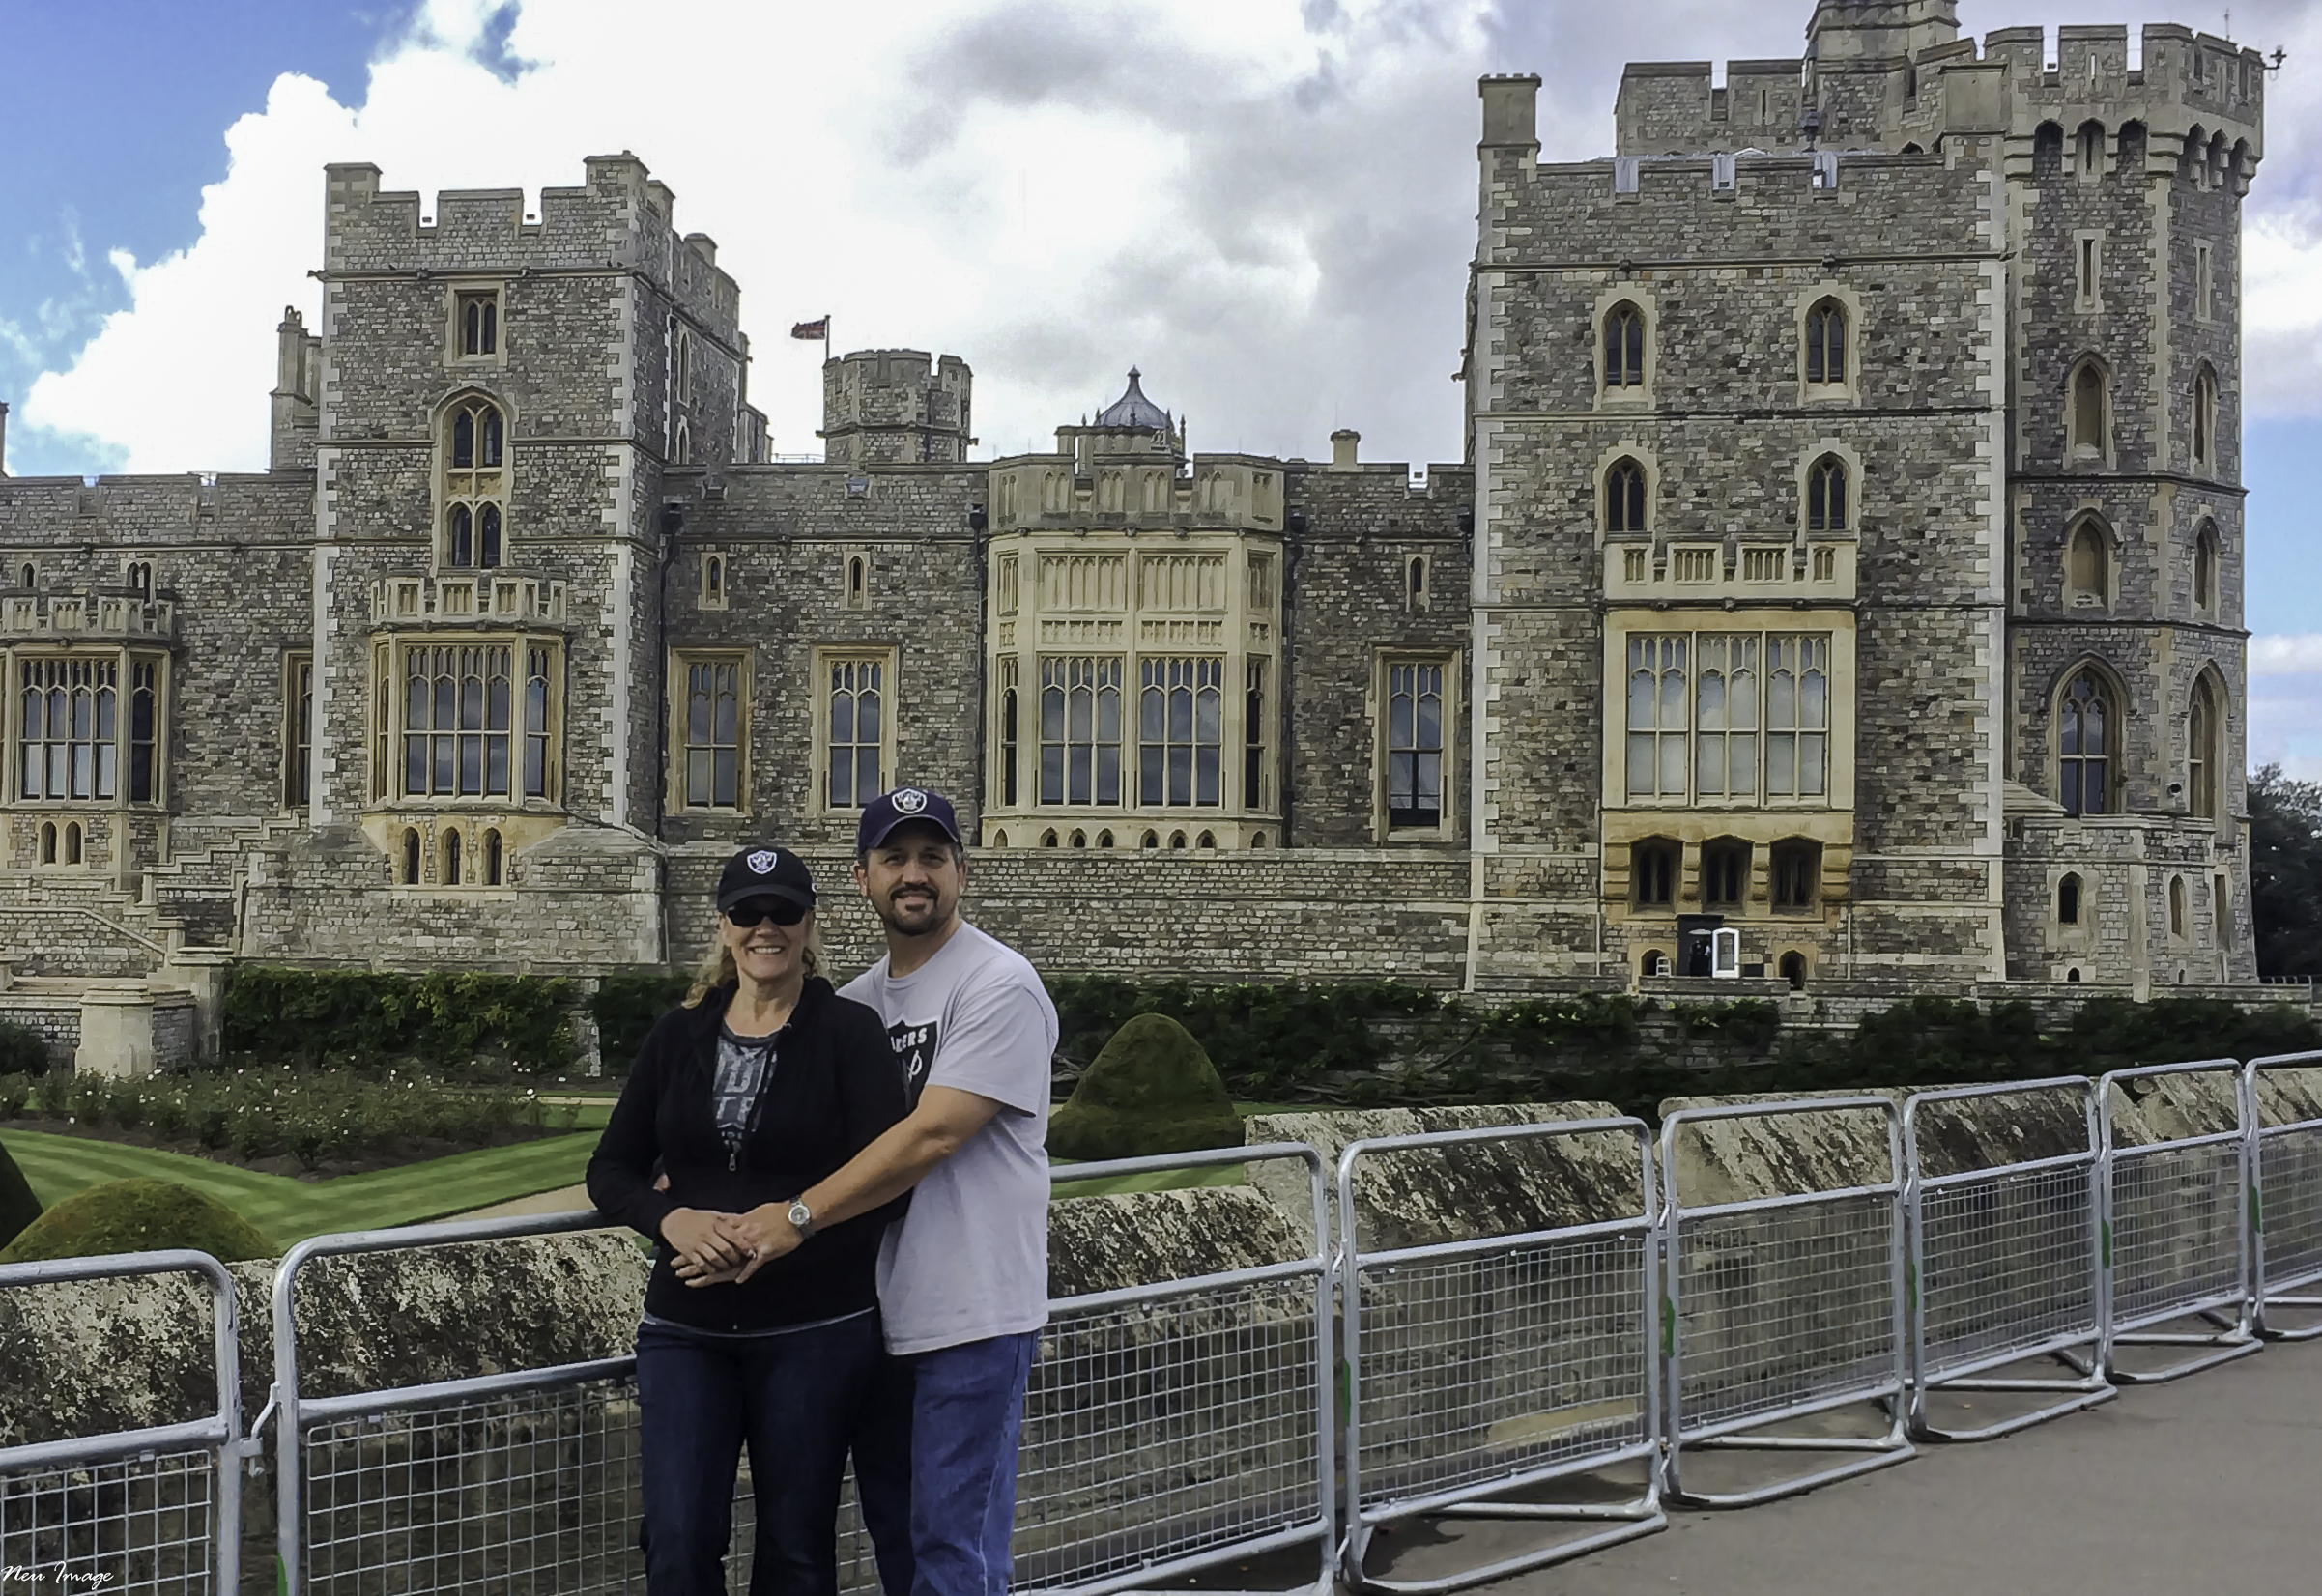 Windsor Castle.jpg